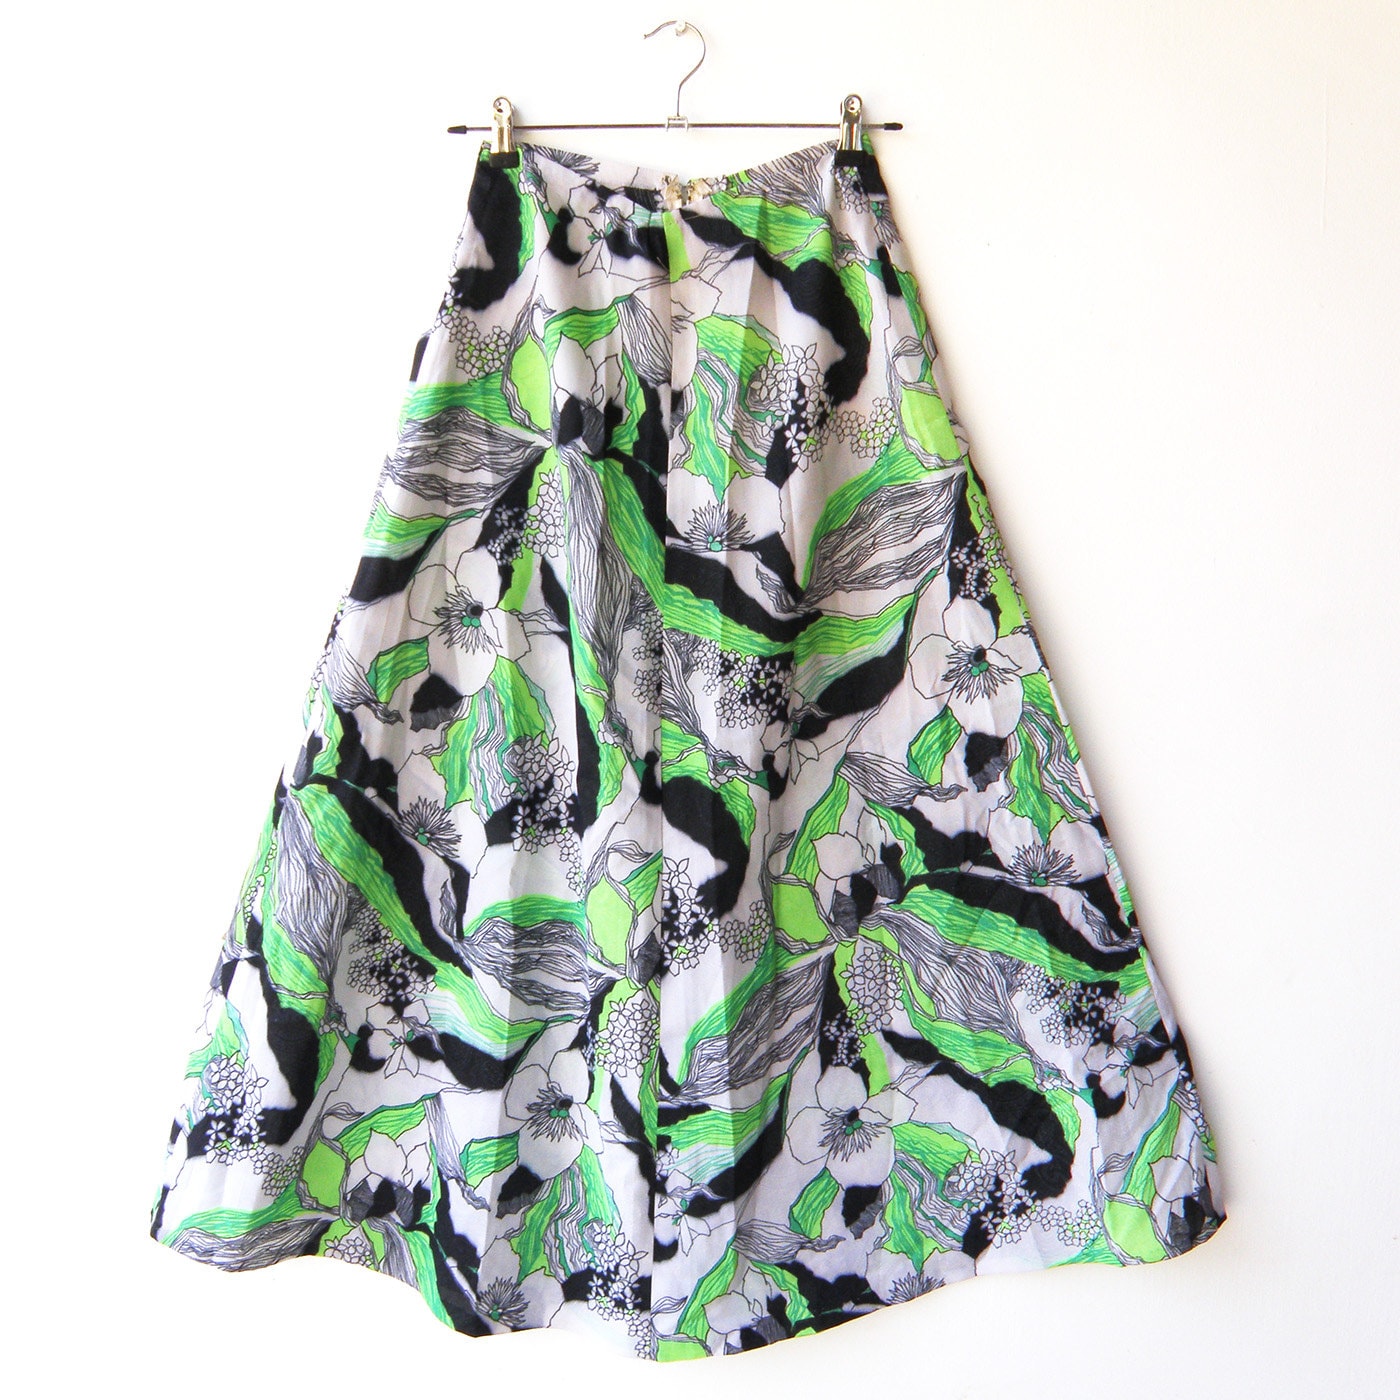 Vintage 70s Maxi Skirt / Poisen Ivy Skirt / Size S M